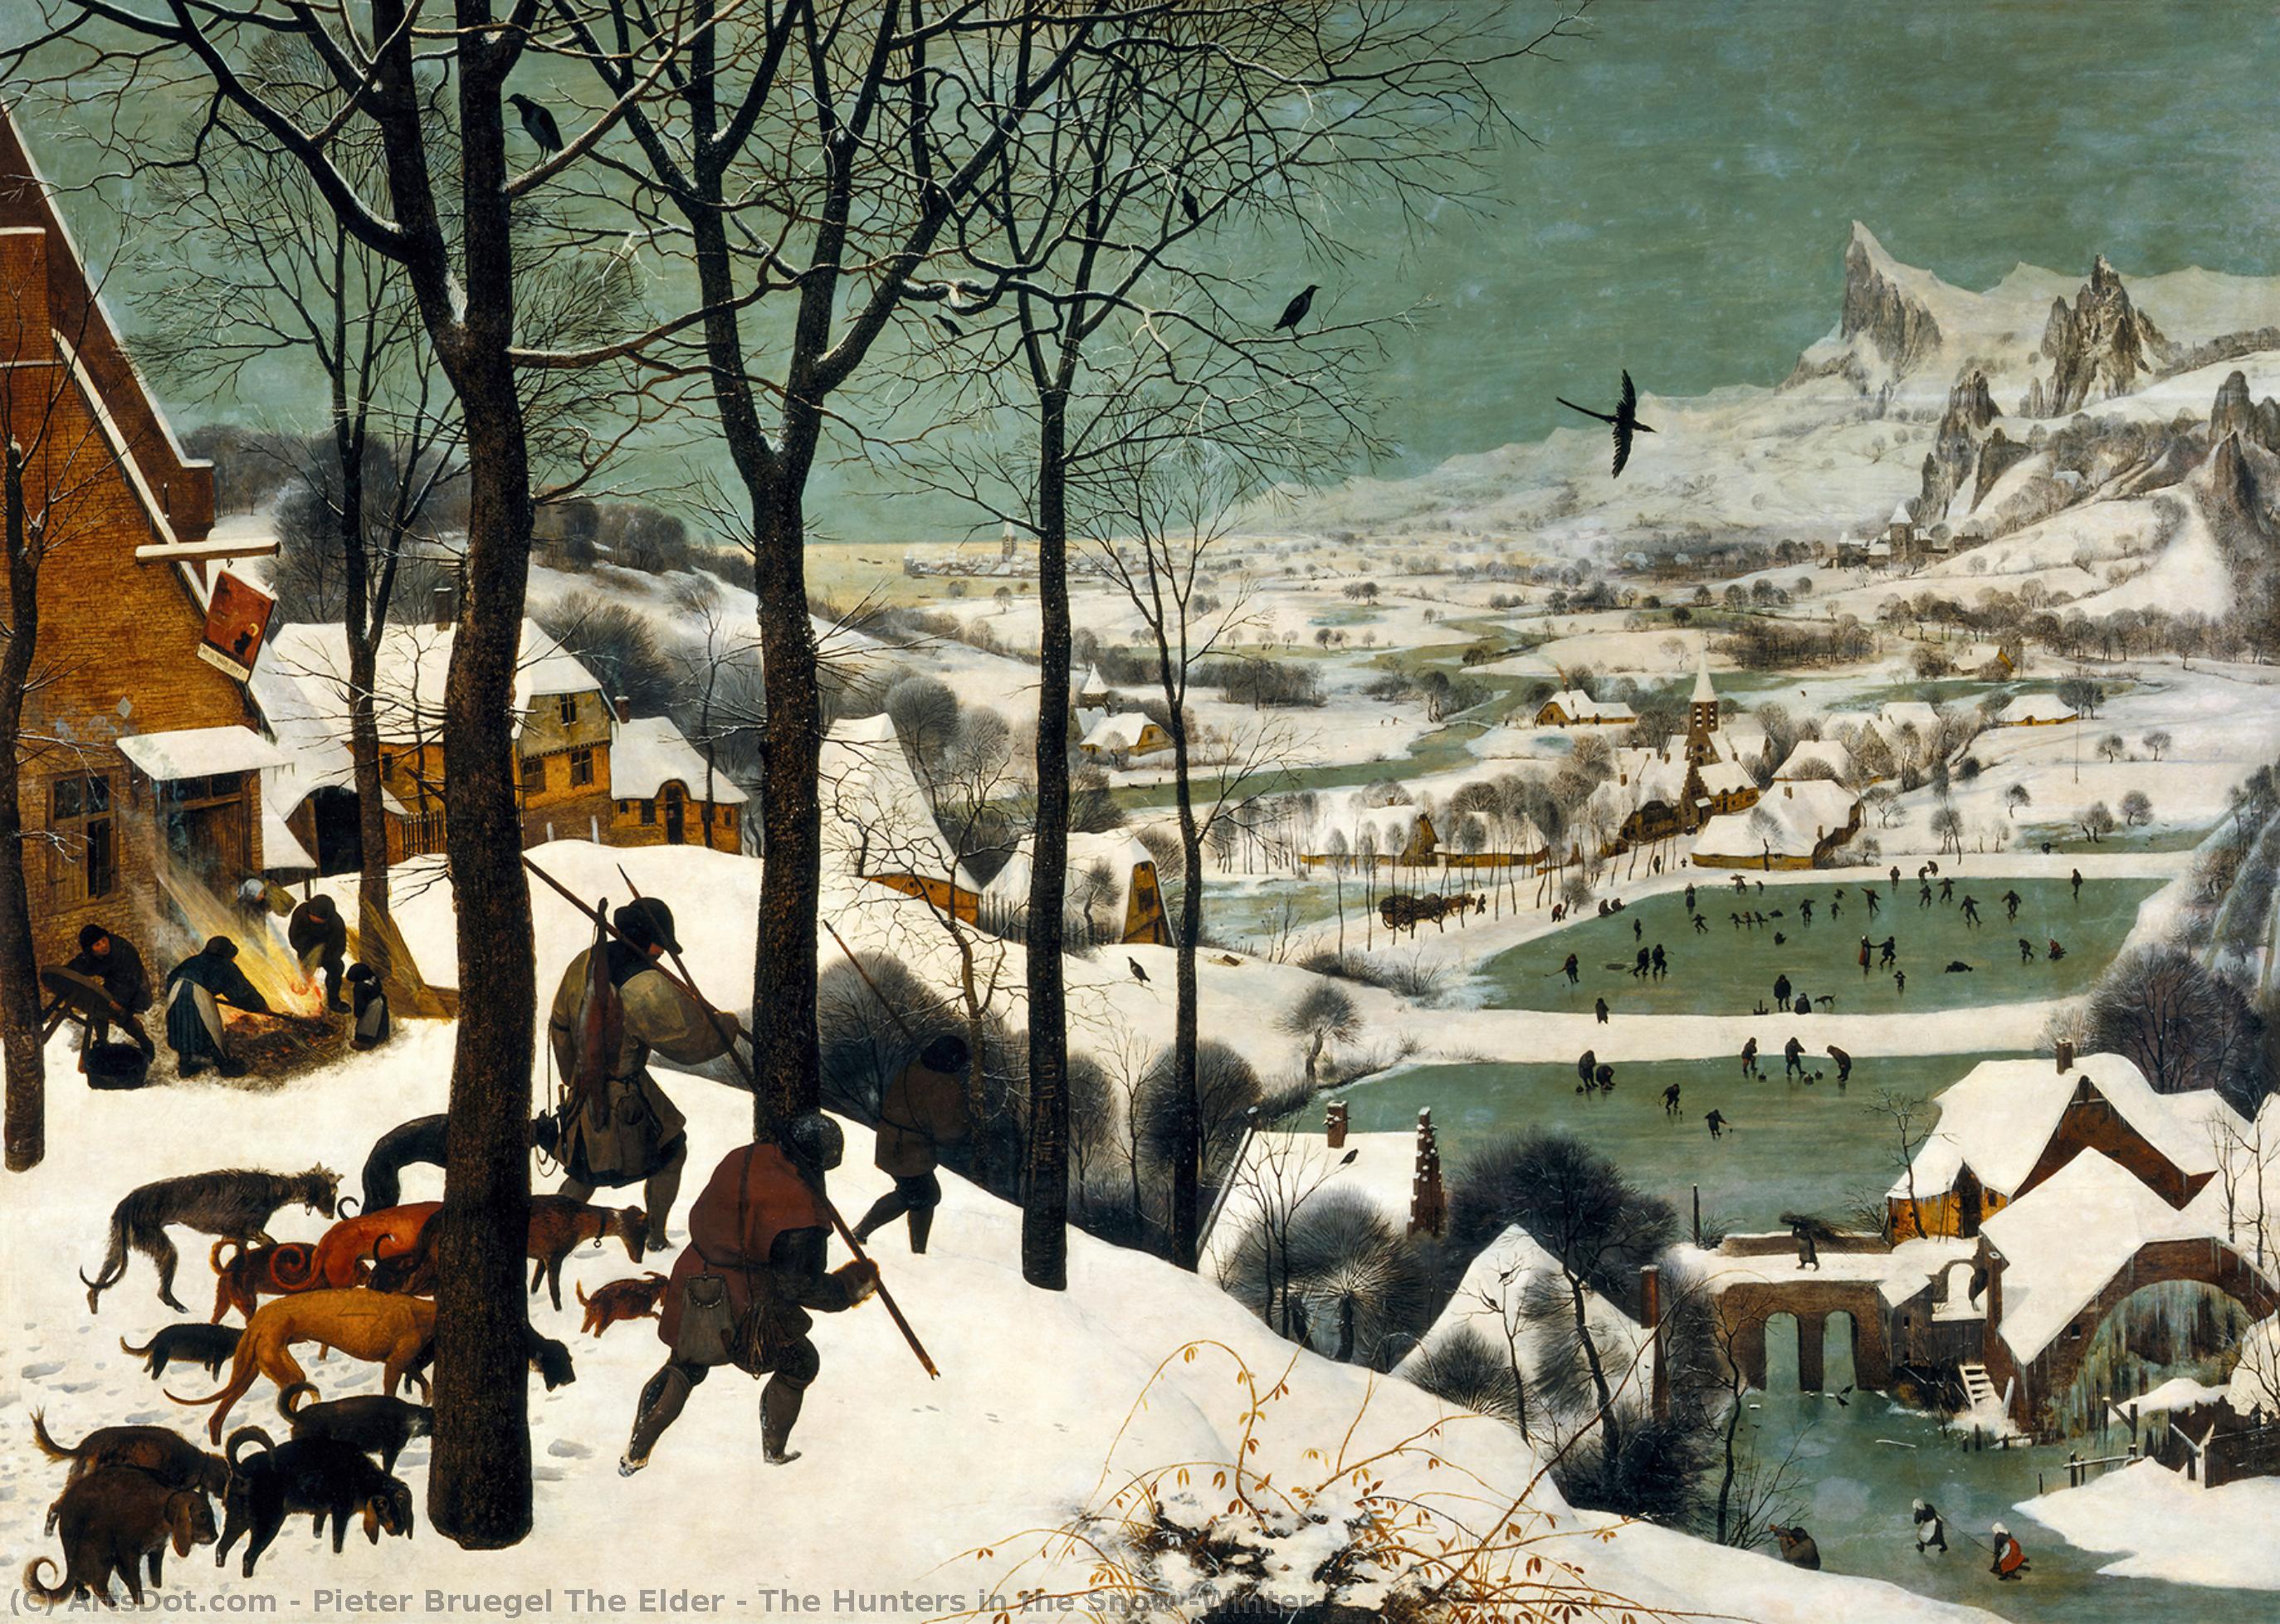 Ordem Reproduções De Pinturas Os Caçadores na Neve (Inverno), 1565 por Pieter Bruegel The Elder (1525-1569, Belgium) | ArtsDot.com